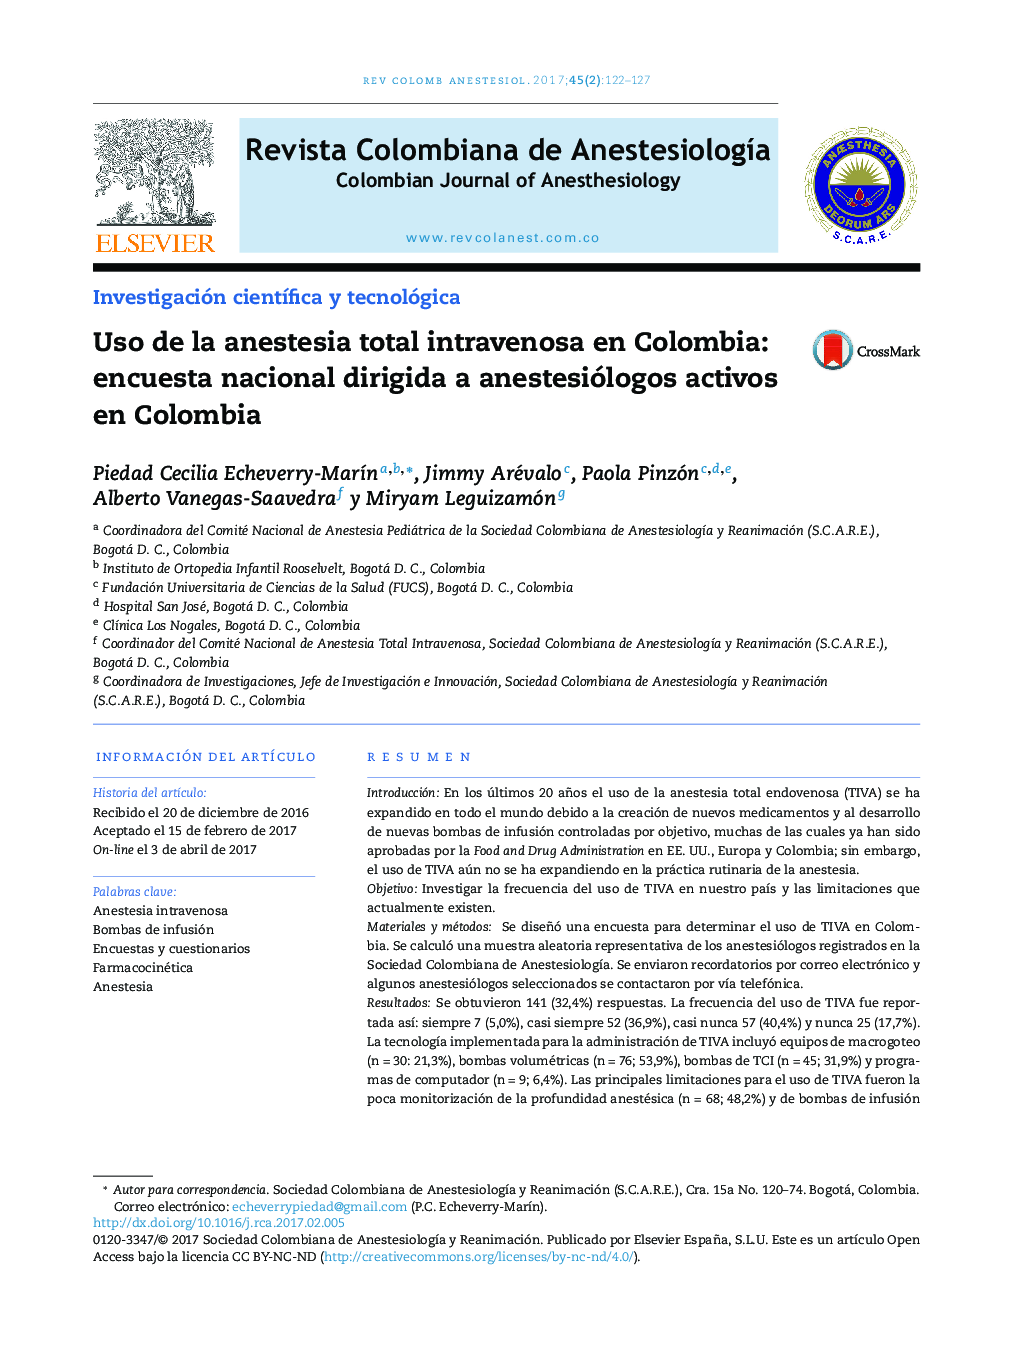 Uso de la anestesia total intravenosa en Colombia: encuesta nacional dirigida a anestesiólogos activos en Colombia